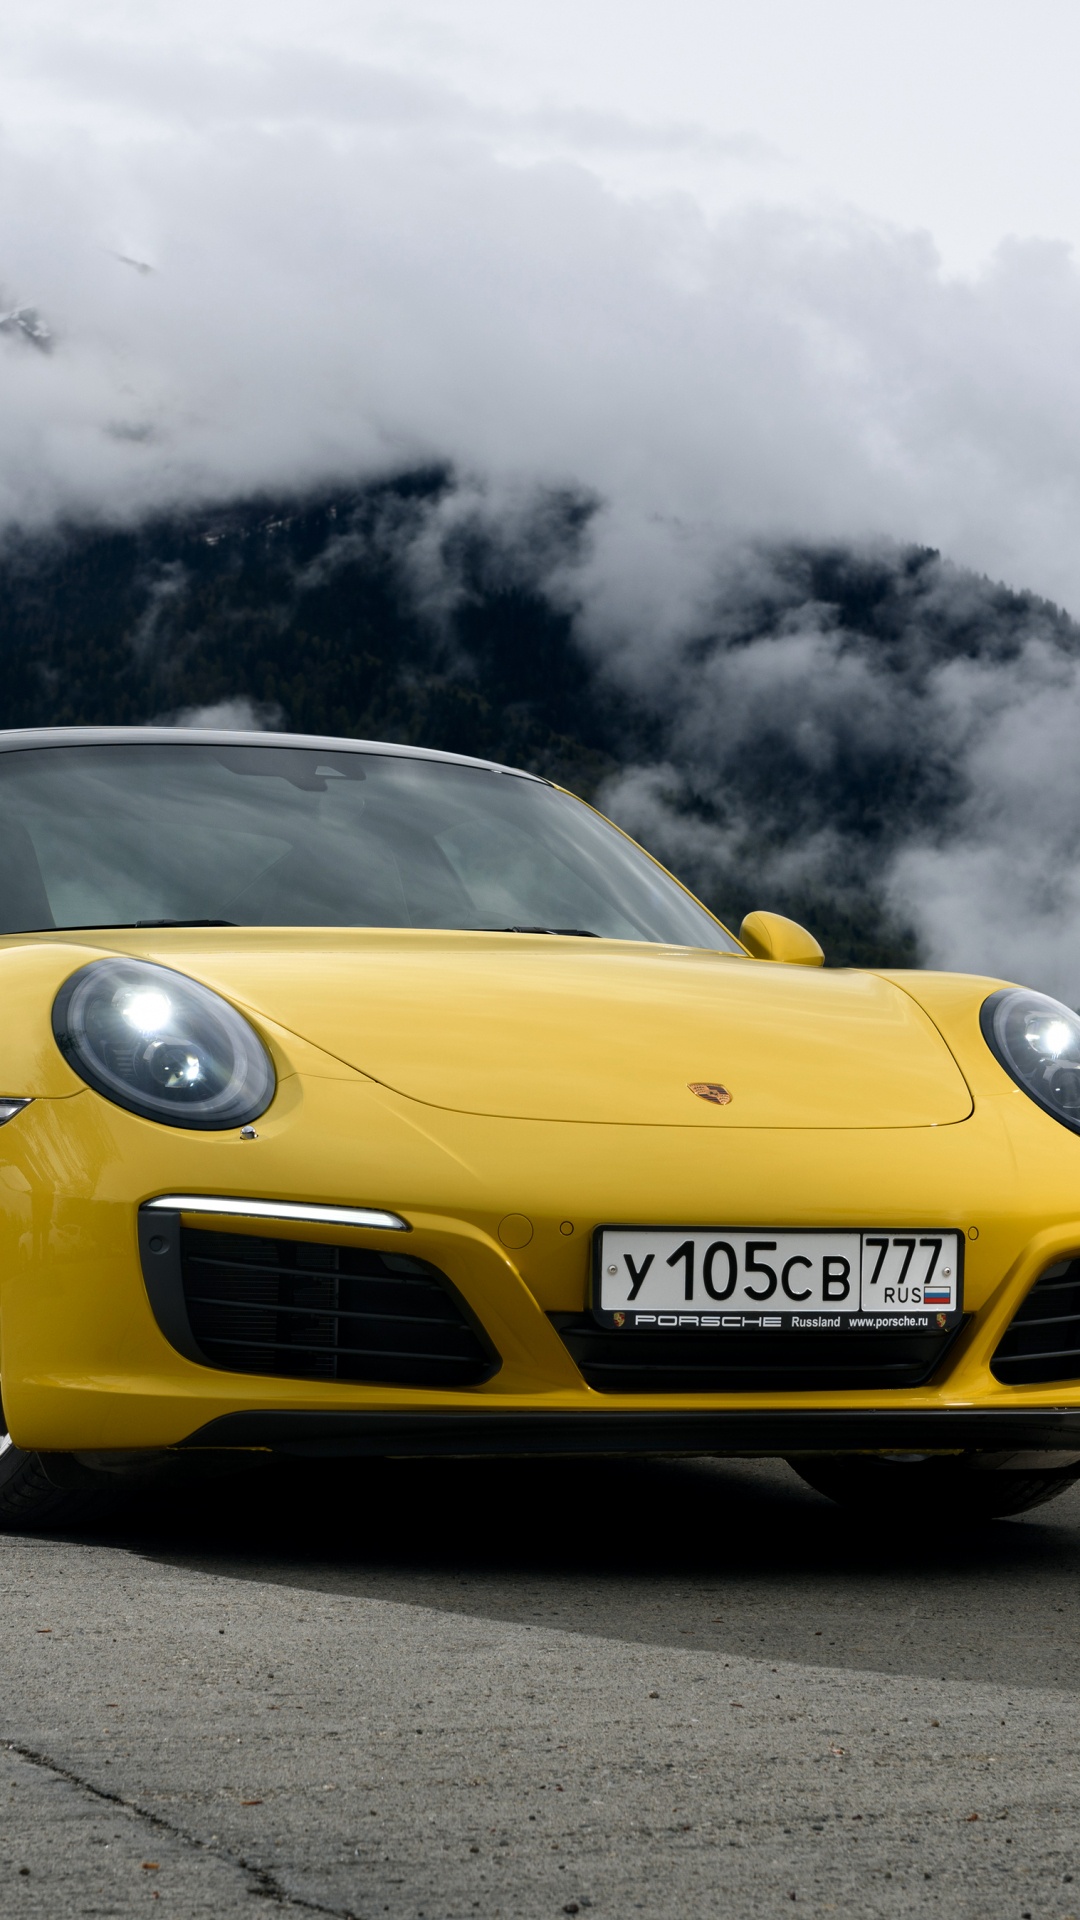 Gelber Porsche 911 Auf Schwarzer Asphaltstraße Unter Grauen Wolken. Wallpaper in 1080x1920 Resolution